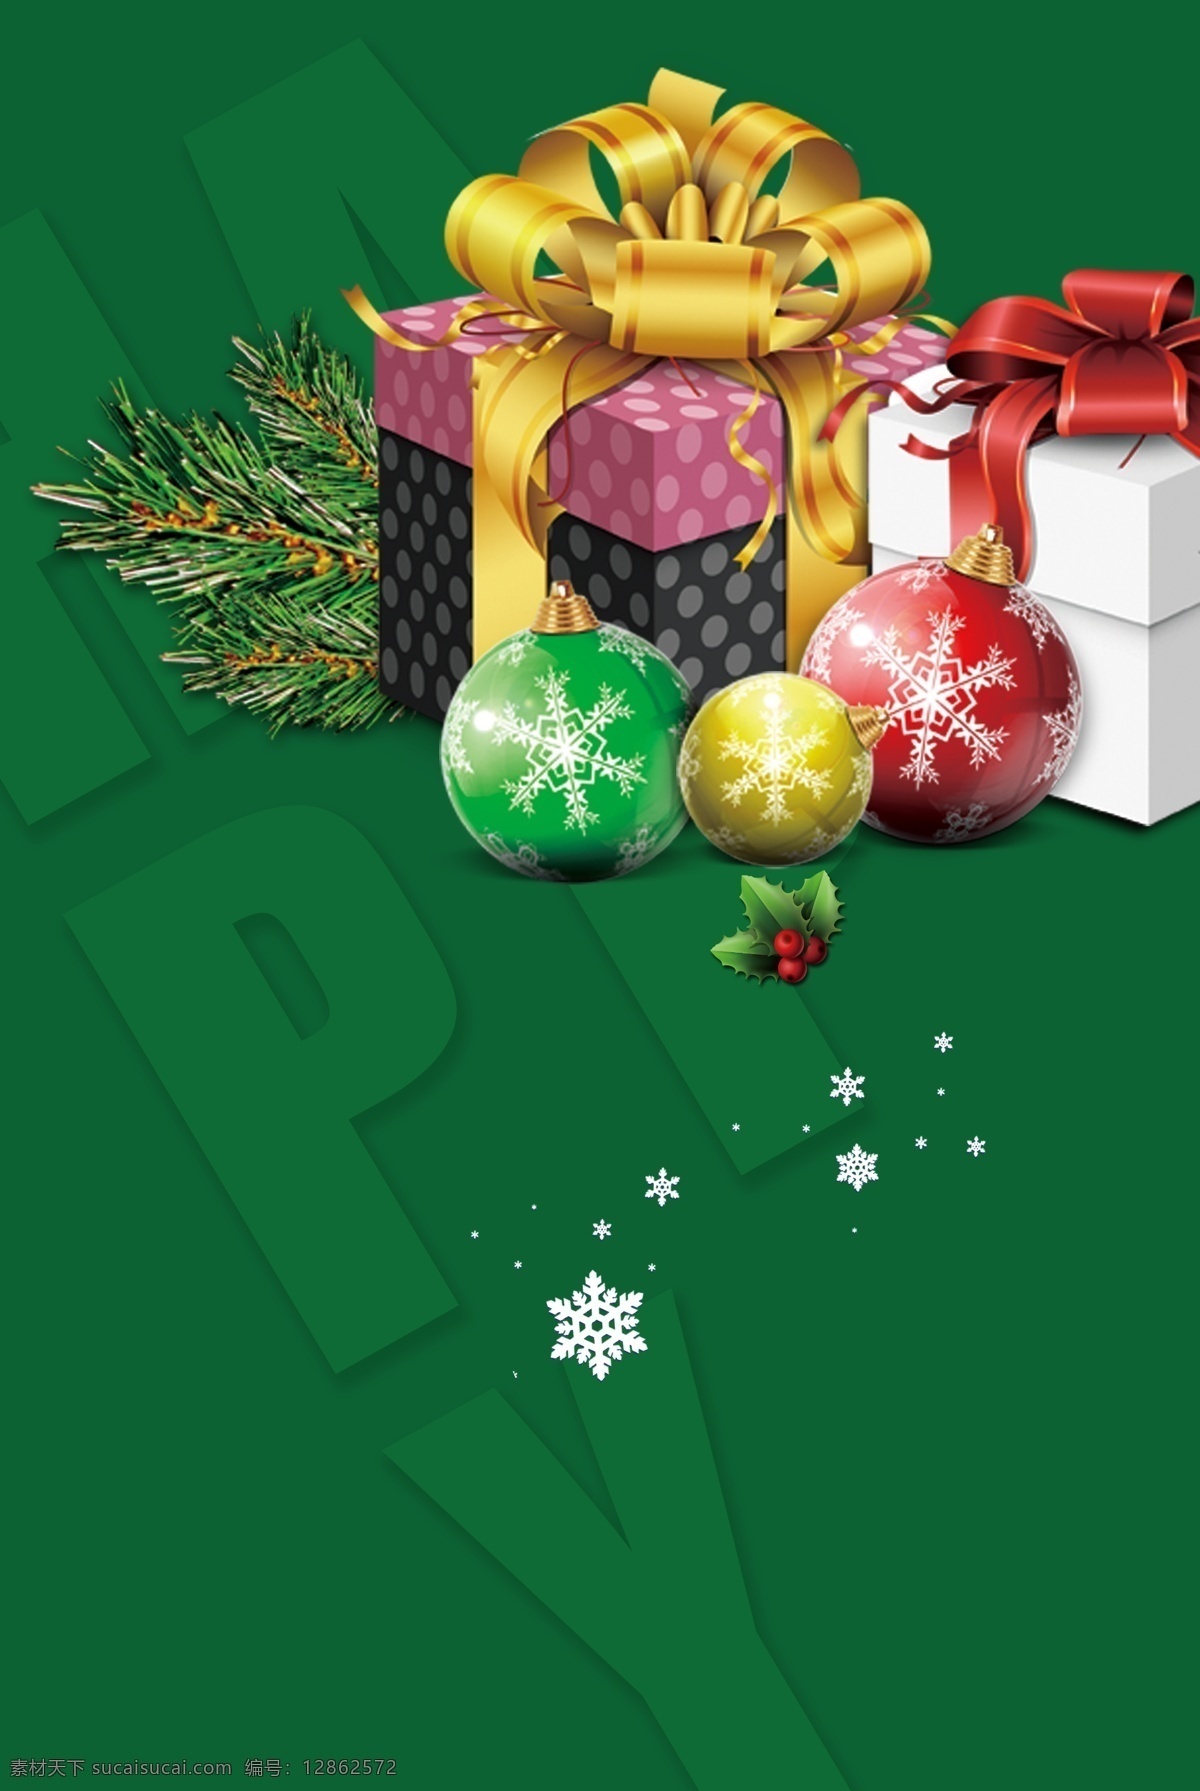 西方 节日 圣诞节 绿色 广告 背景 图 丝带 红色 冬季 雪人 铃铛 圣诞树 圣诞老人 派对 活动 广告背景